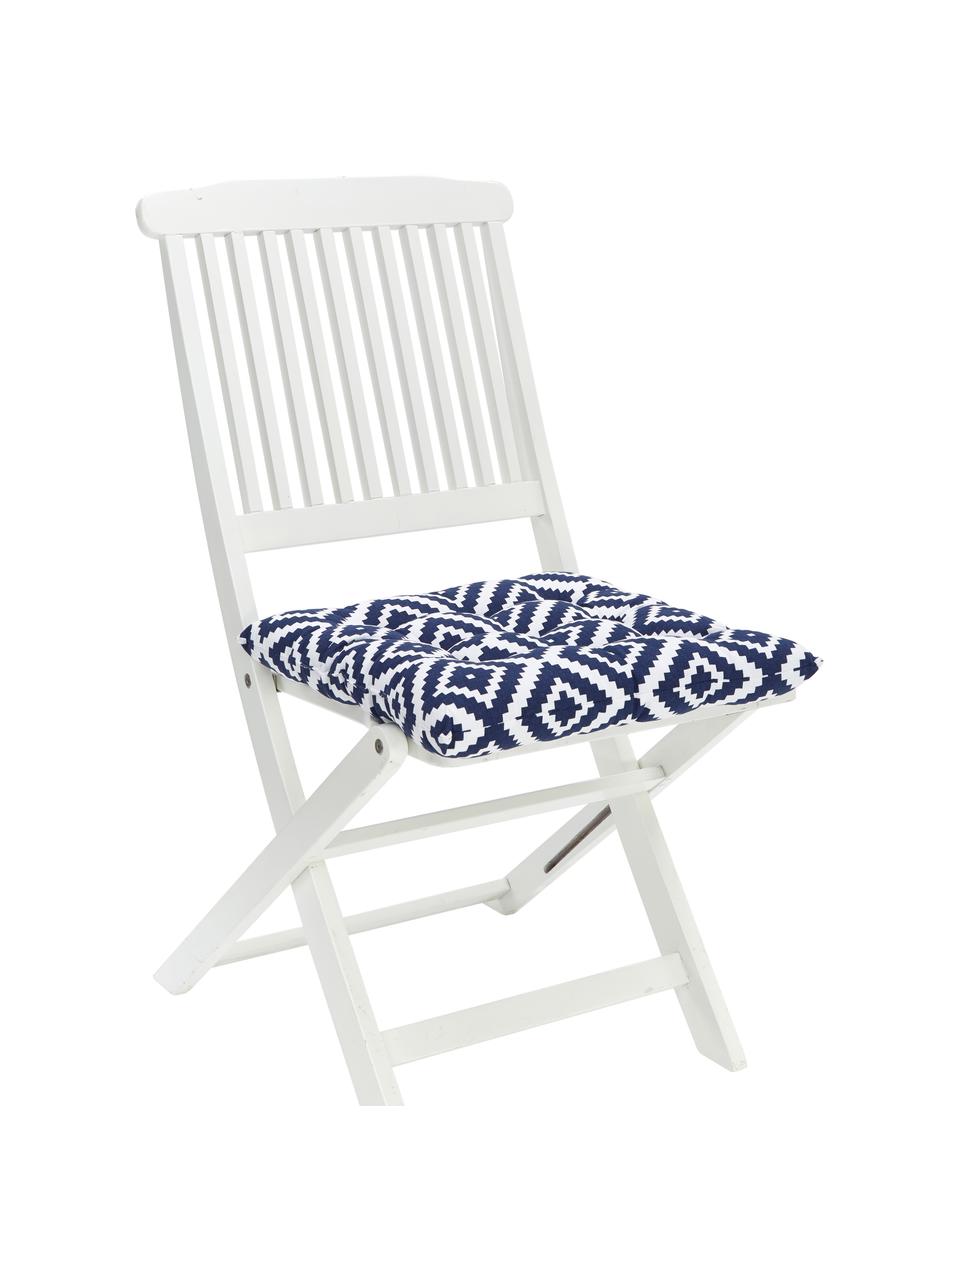 Podsedák na židli Miami, Tmavě modrá, bílá, Š 40 cm, D 40 cm